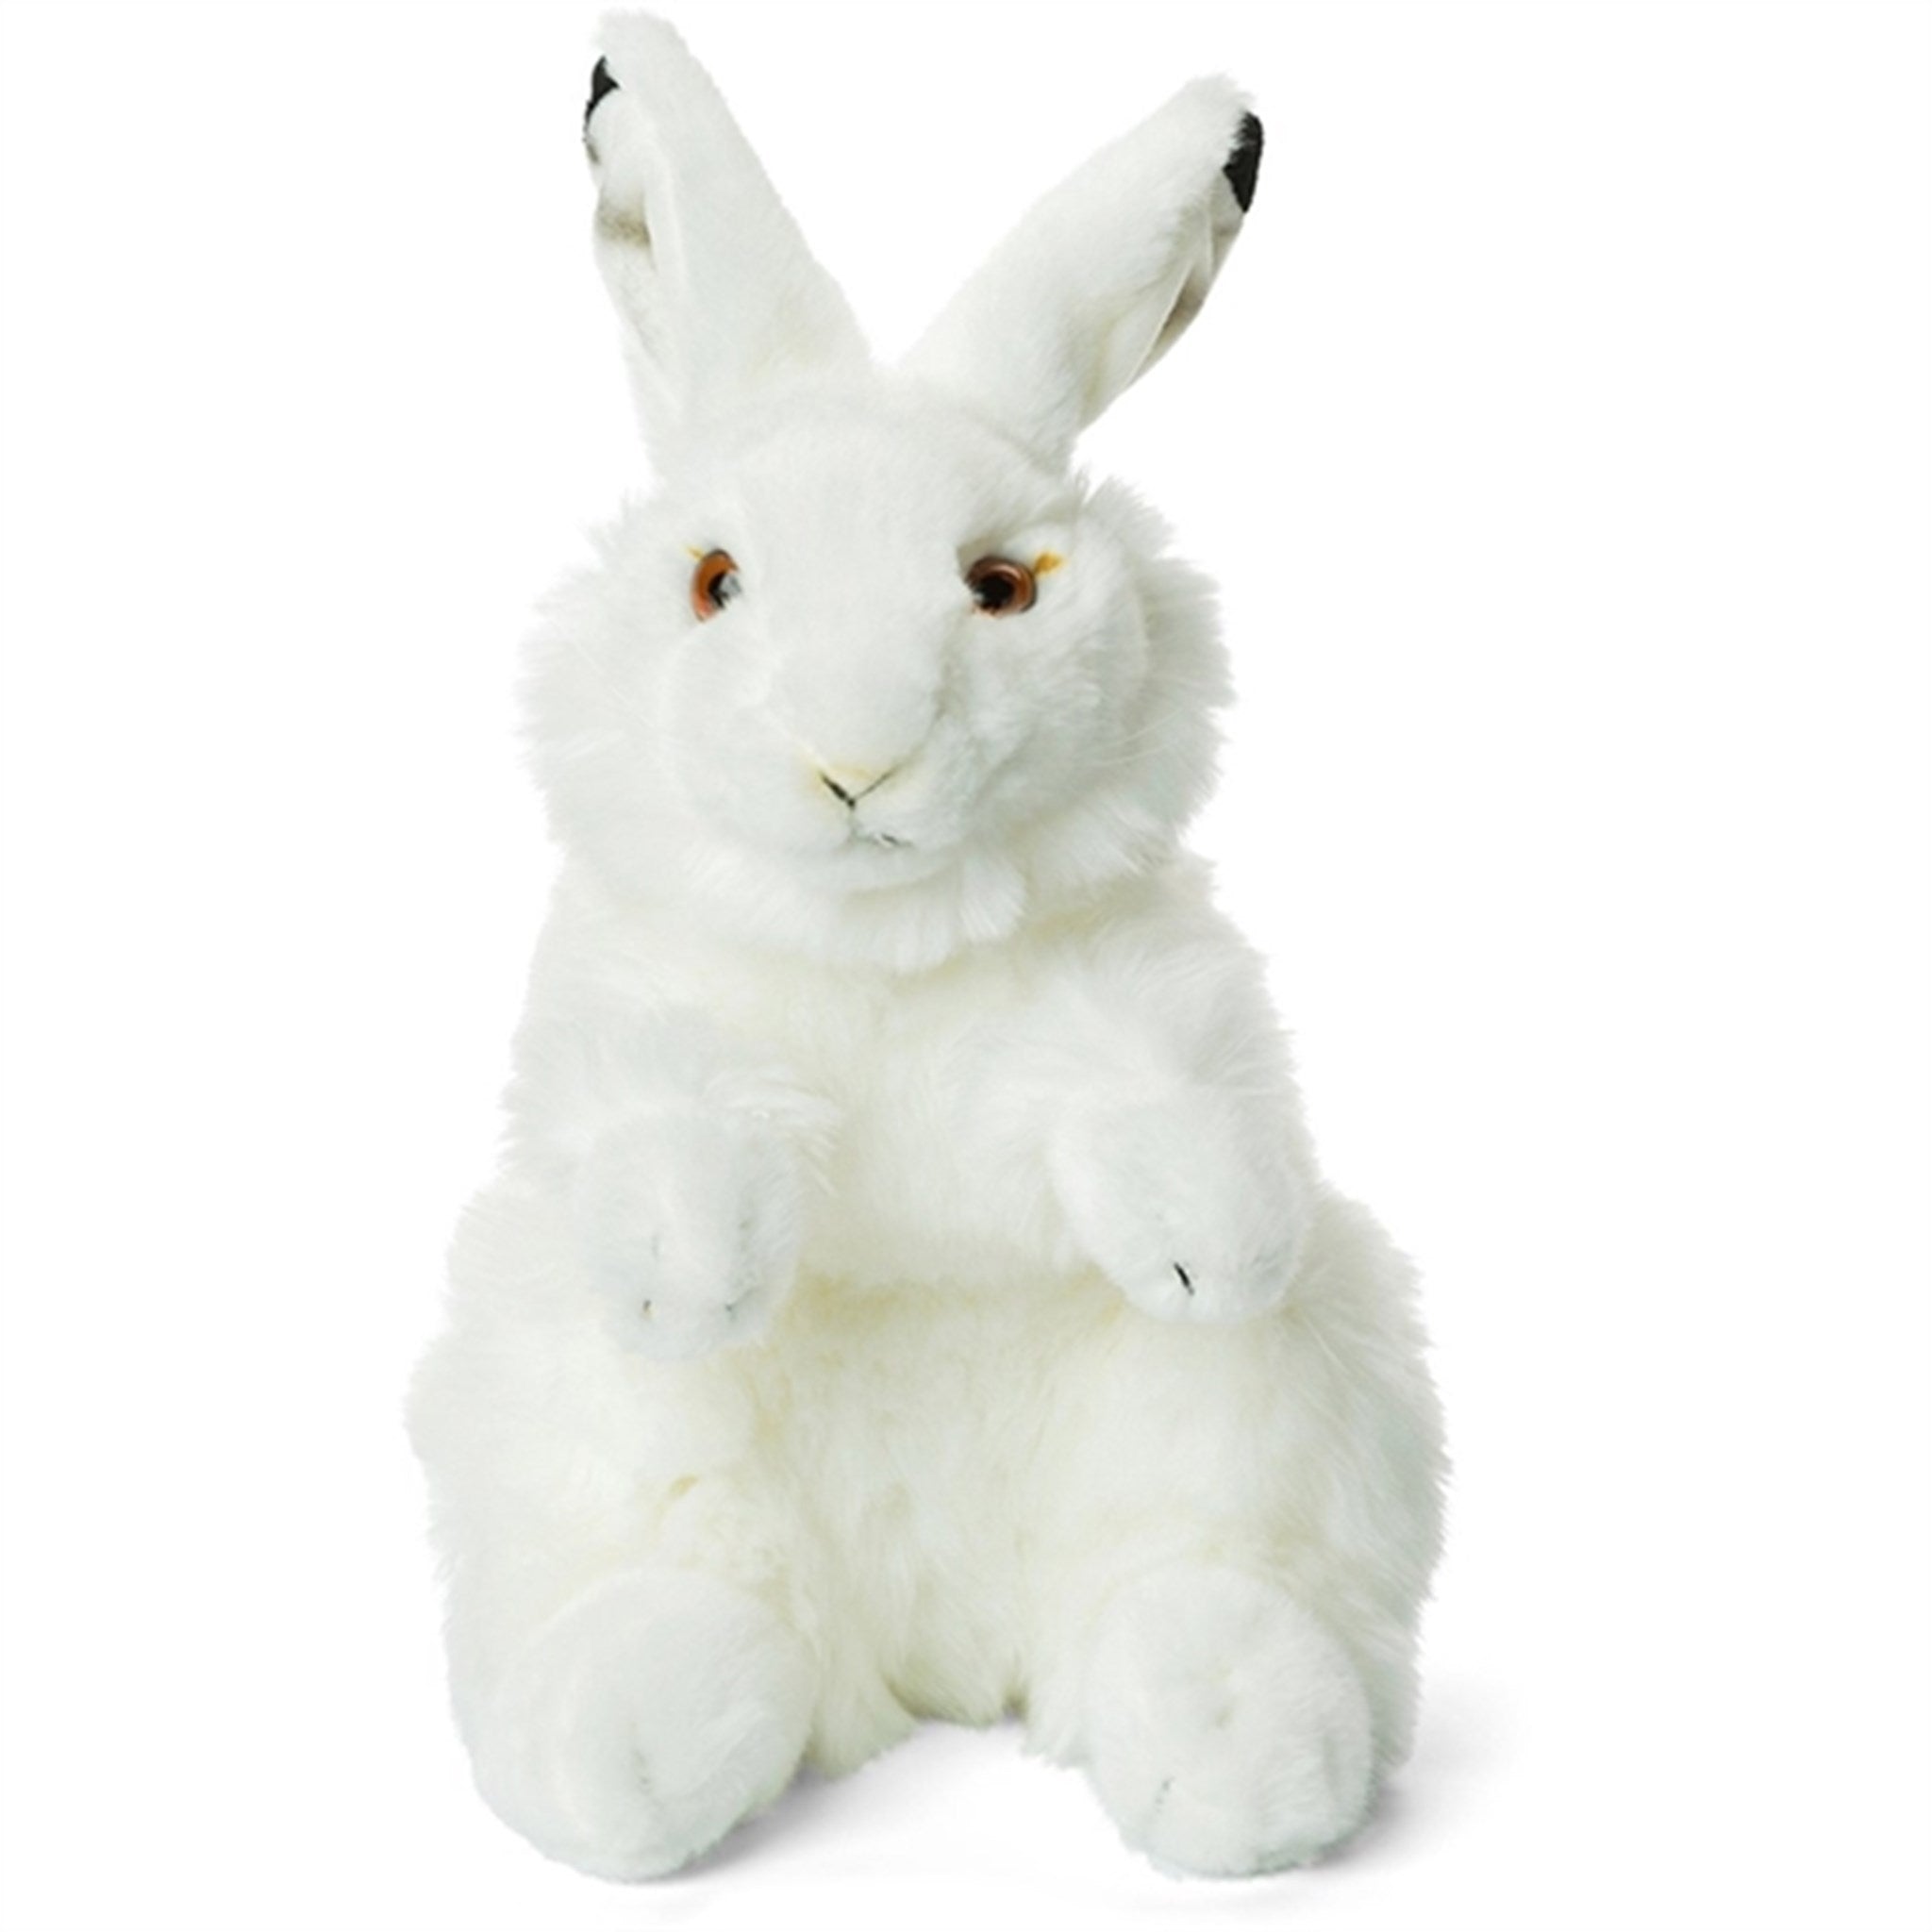 Bon Ton Toys WWF Plush Snowshoe Hare 24 cm 2